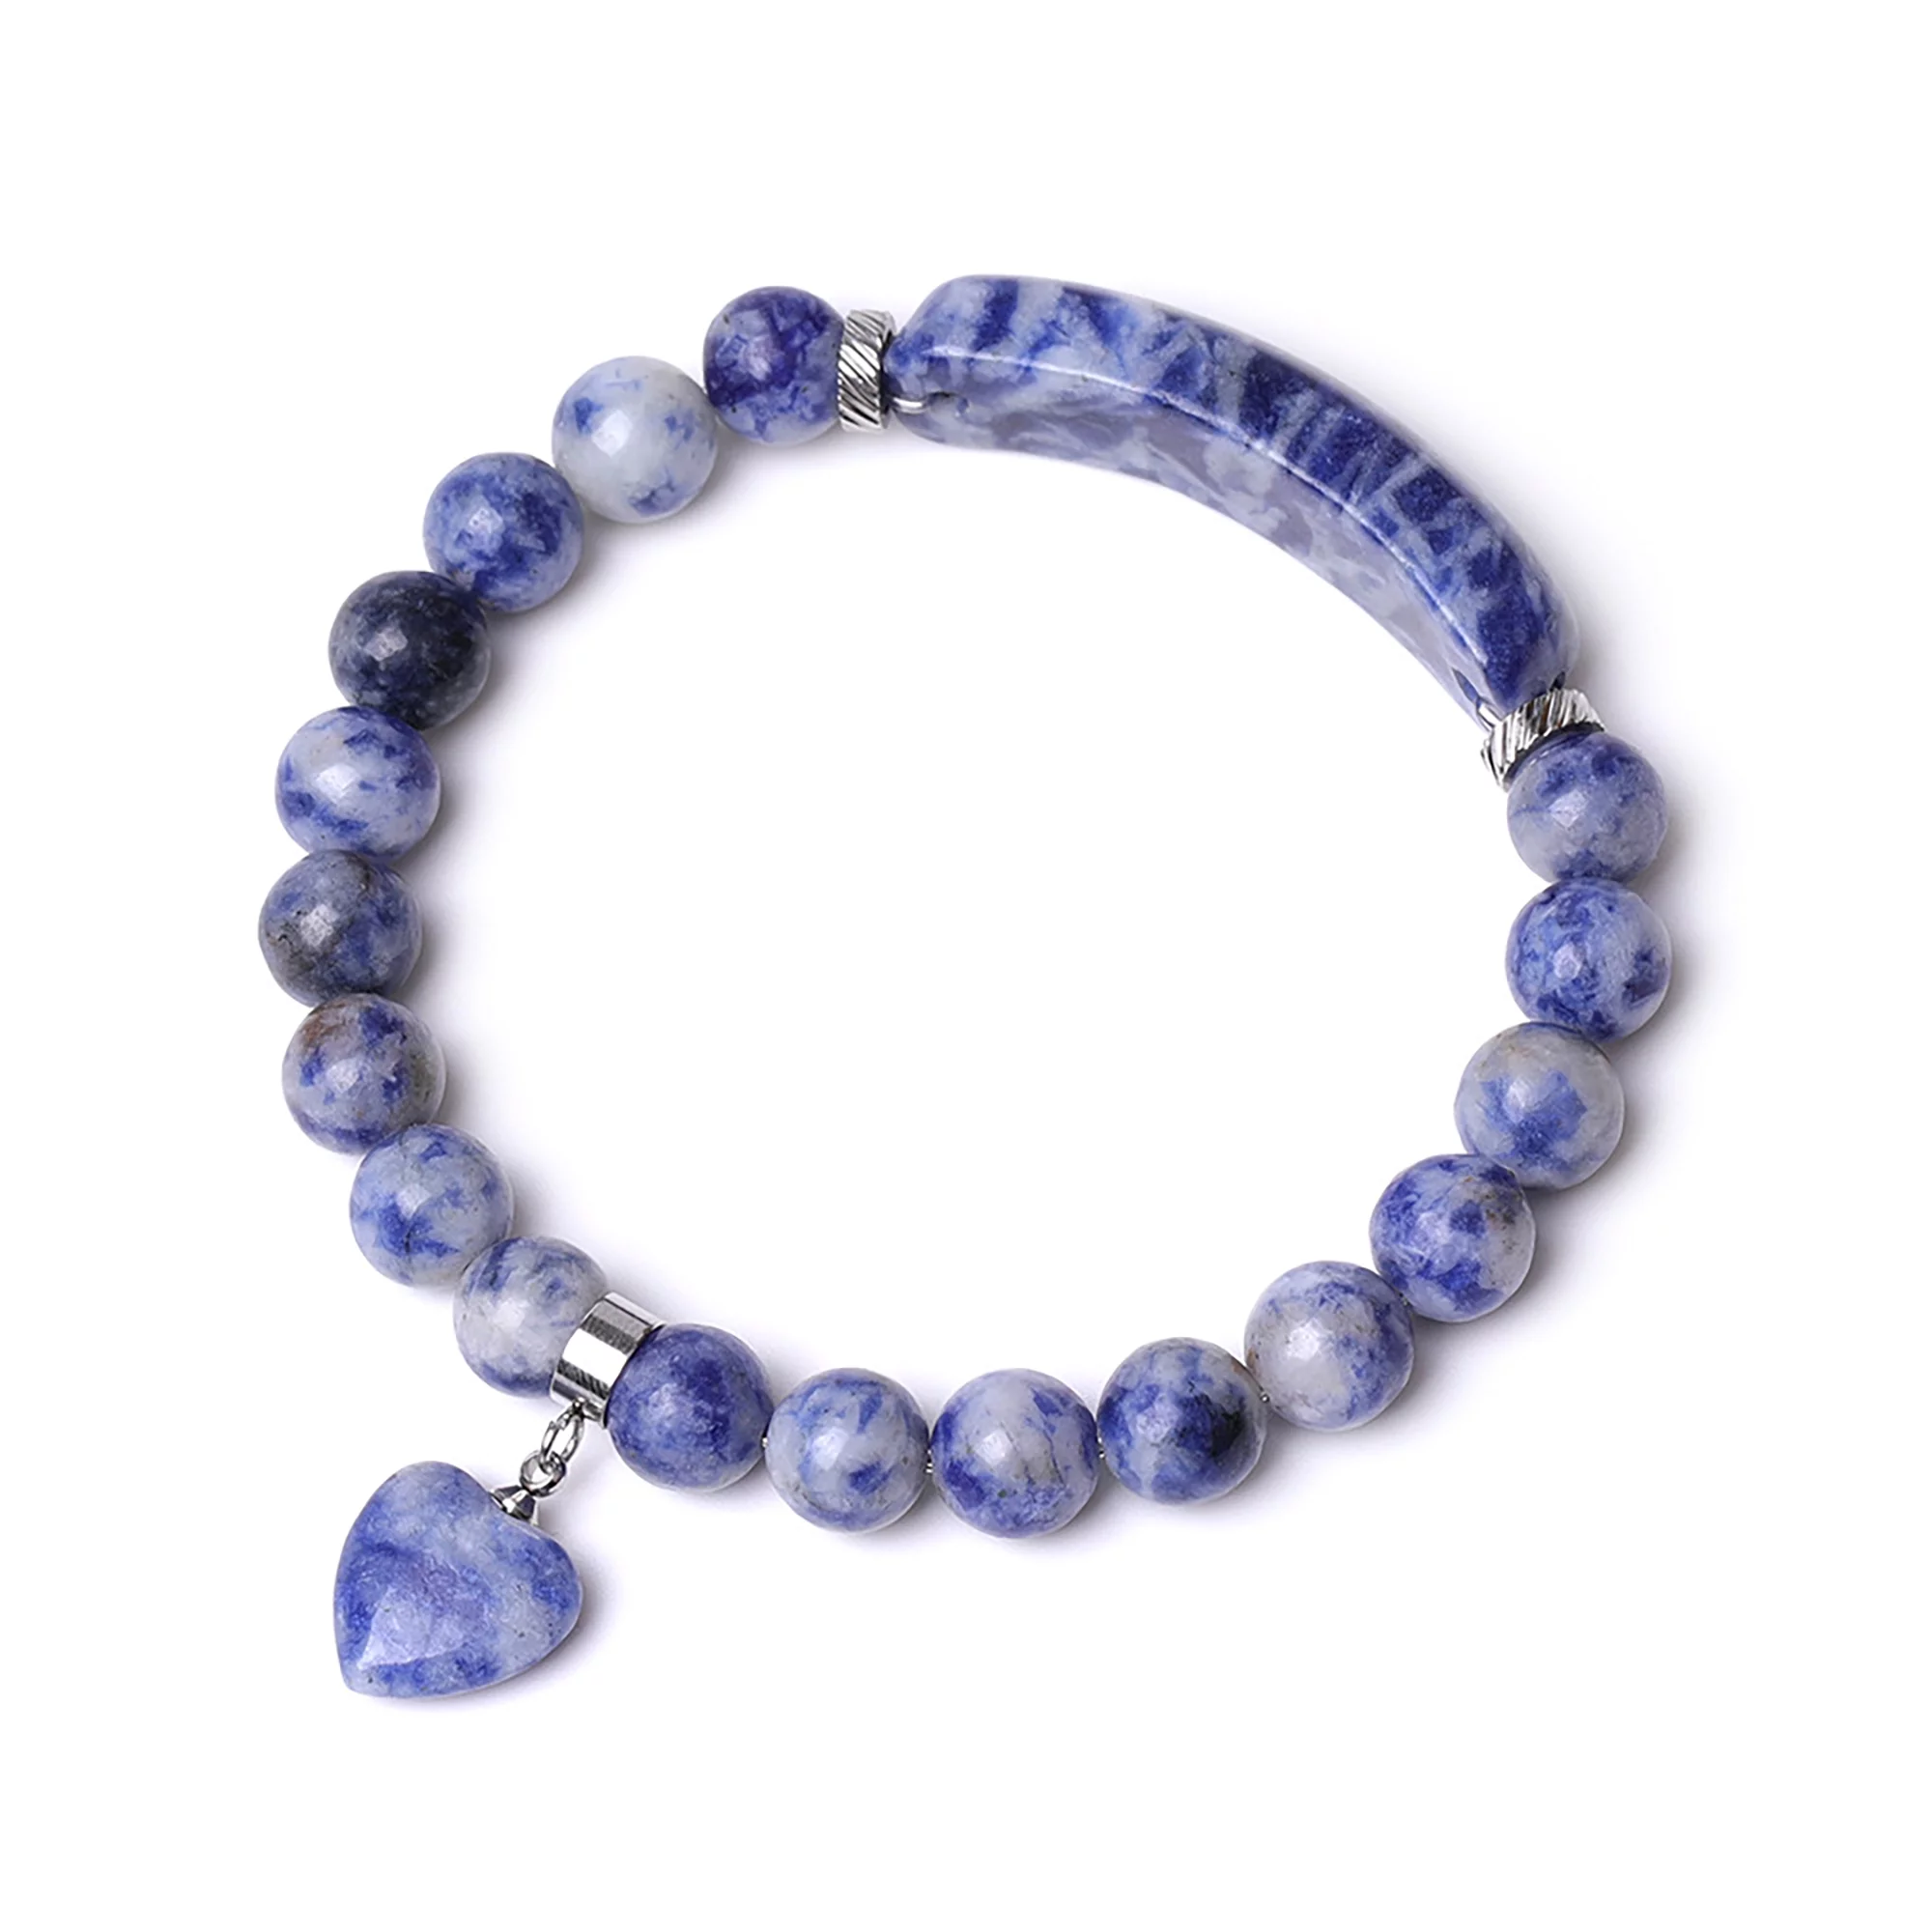 VINCHIC 8MM Lapis Lazuli Bracelet Love Heart Stretch Bracelet Energy Crystal Bracelet for Women Girls